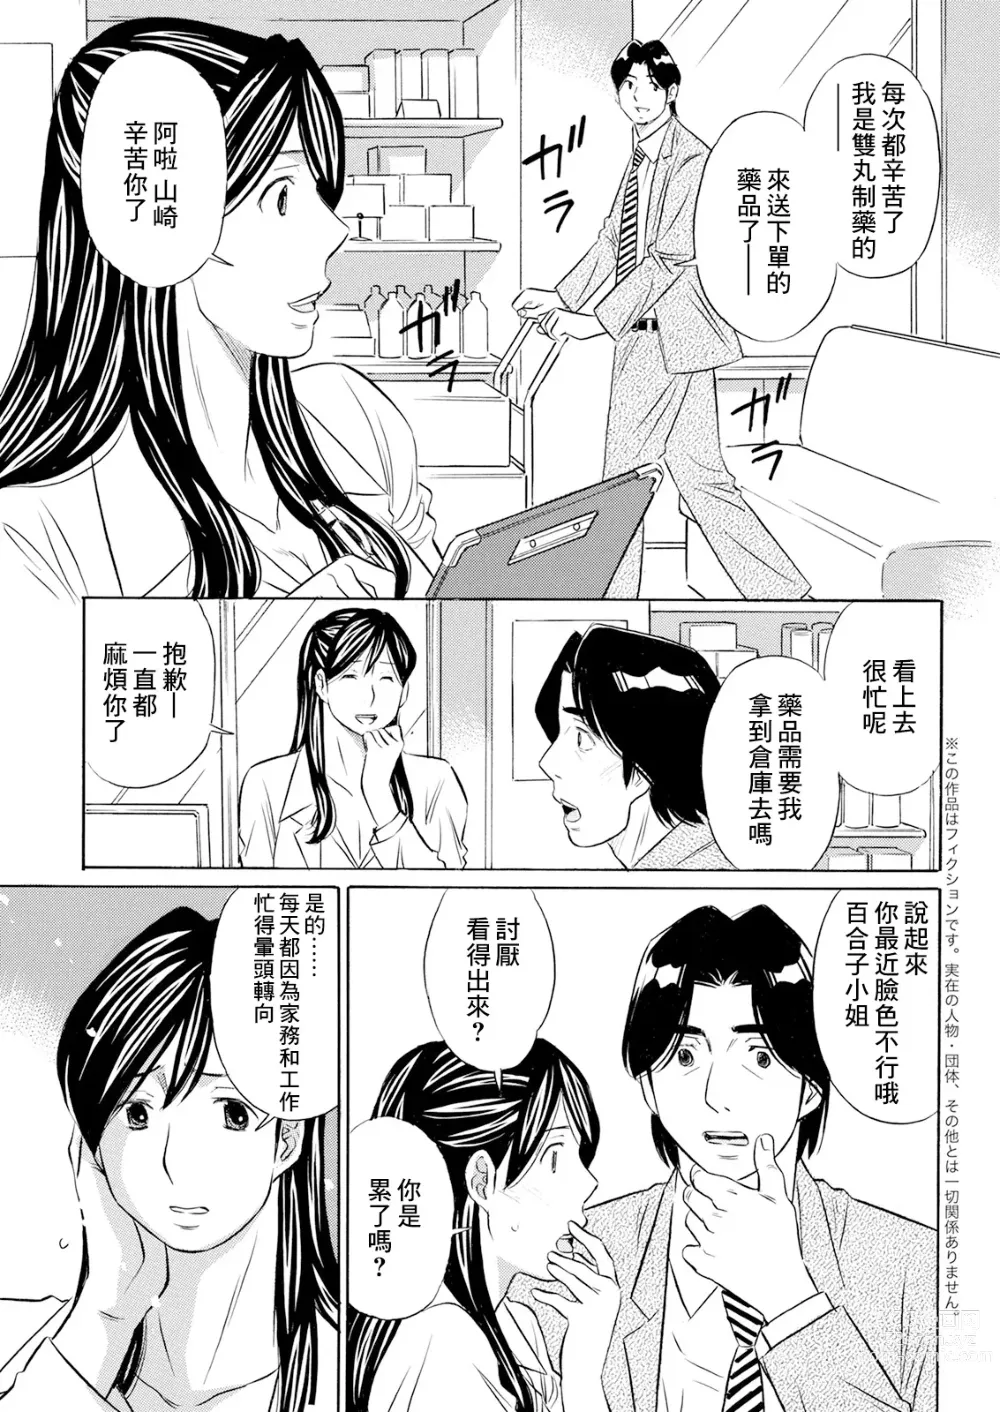 Page 3 of manga Biyaku Shohousen